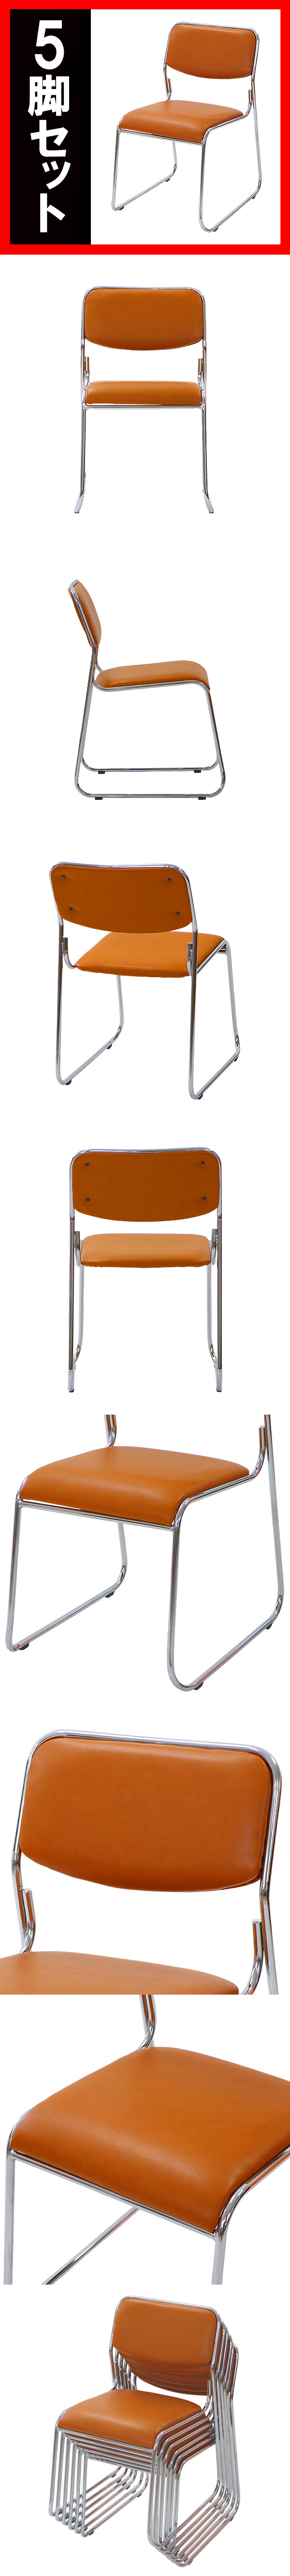 定番最新作送料無料 5脚セット ミーティングチェア 会議イス 会議椅子 スタッキングチェア パイプチェア パイプイス パイプ椅子 キャメル パイプイス